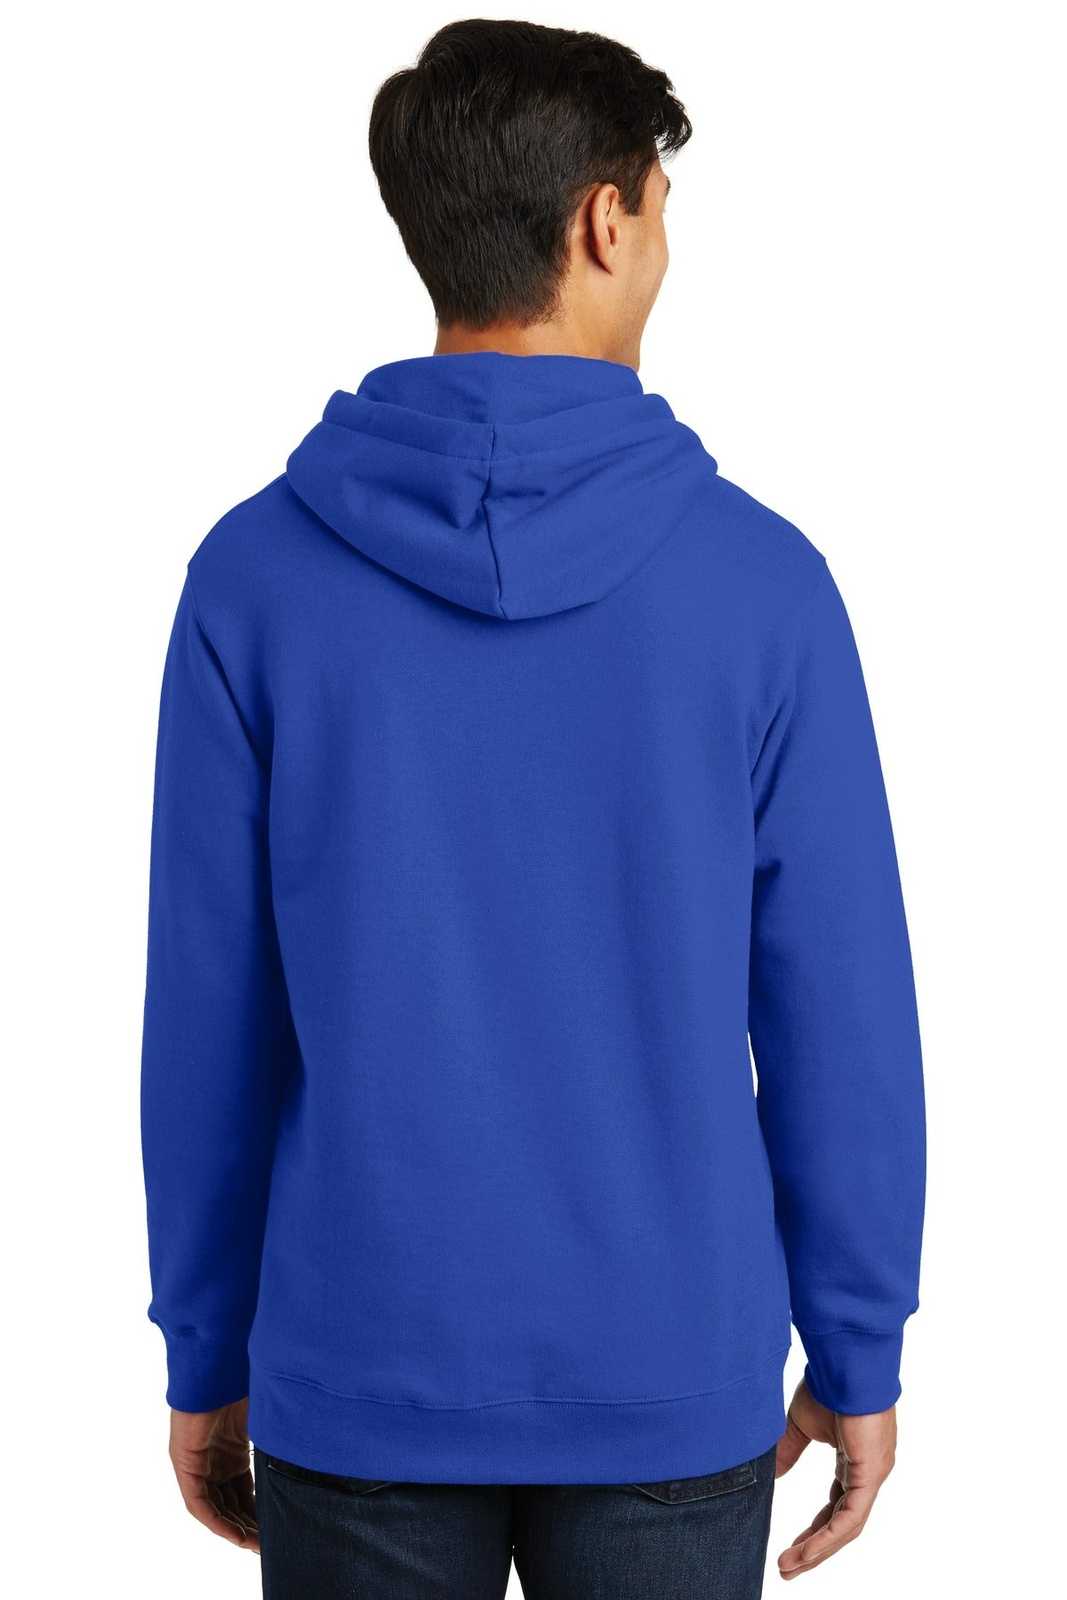 Port &amp; Company PC850H Fan Favorite Fleece Pullover Hooded Sweatshirt - True Royal - HIT a Double - 2